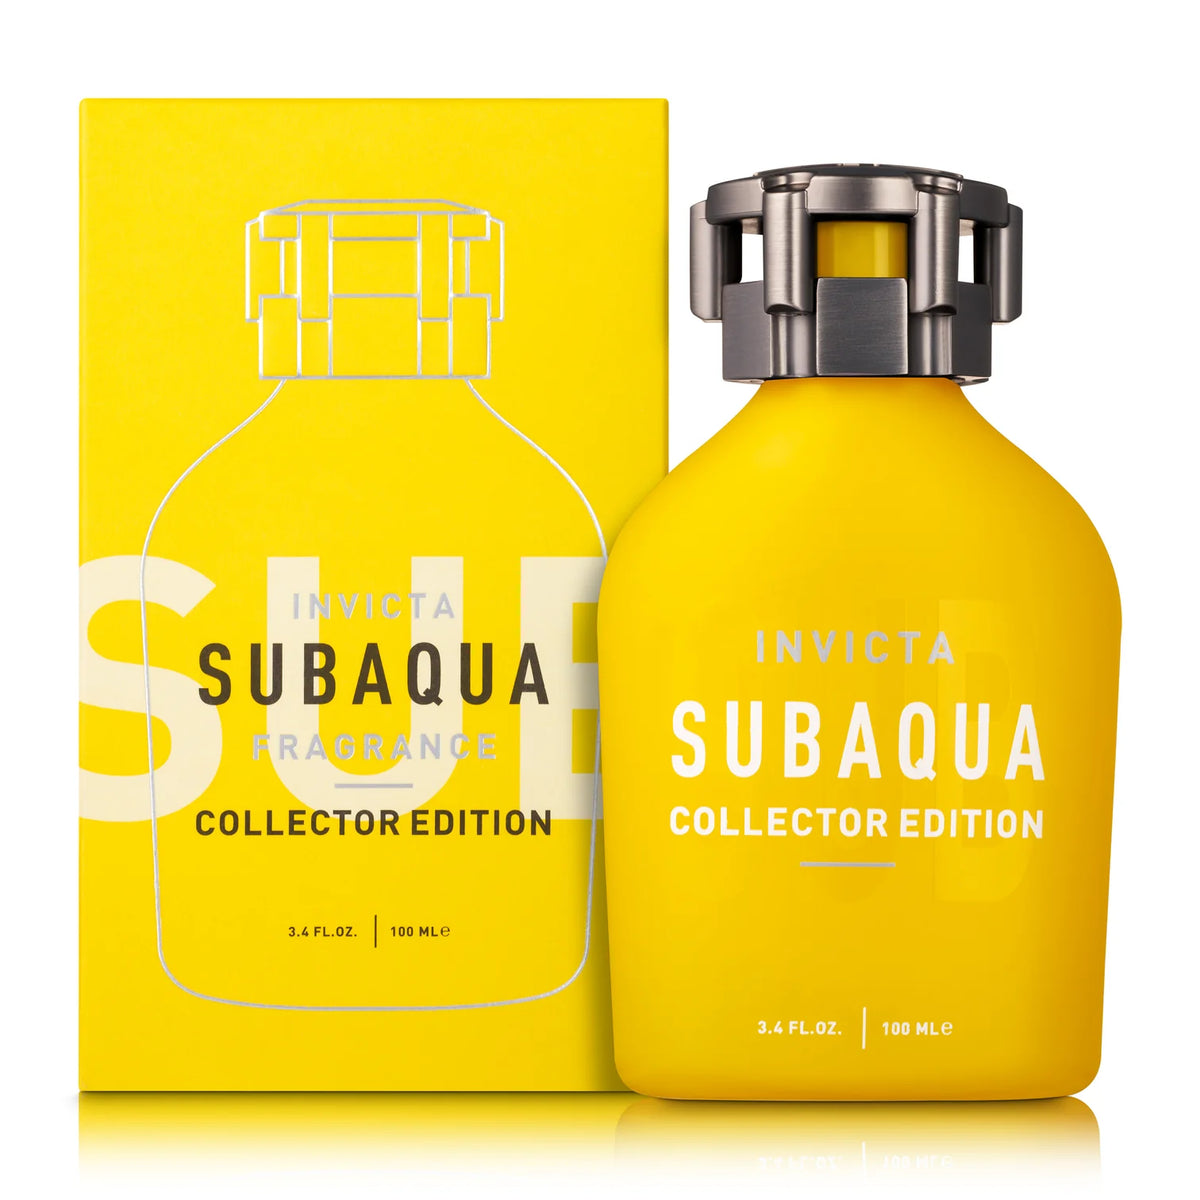 Invicta Subaqua Men’s Perfume/Cologne For Men Eau de Toilette 3.4 oz E ...